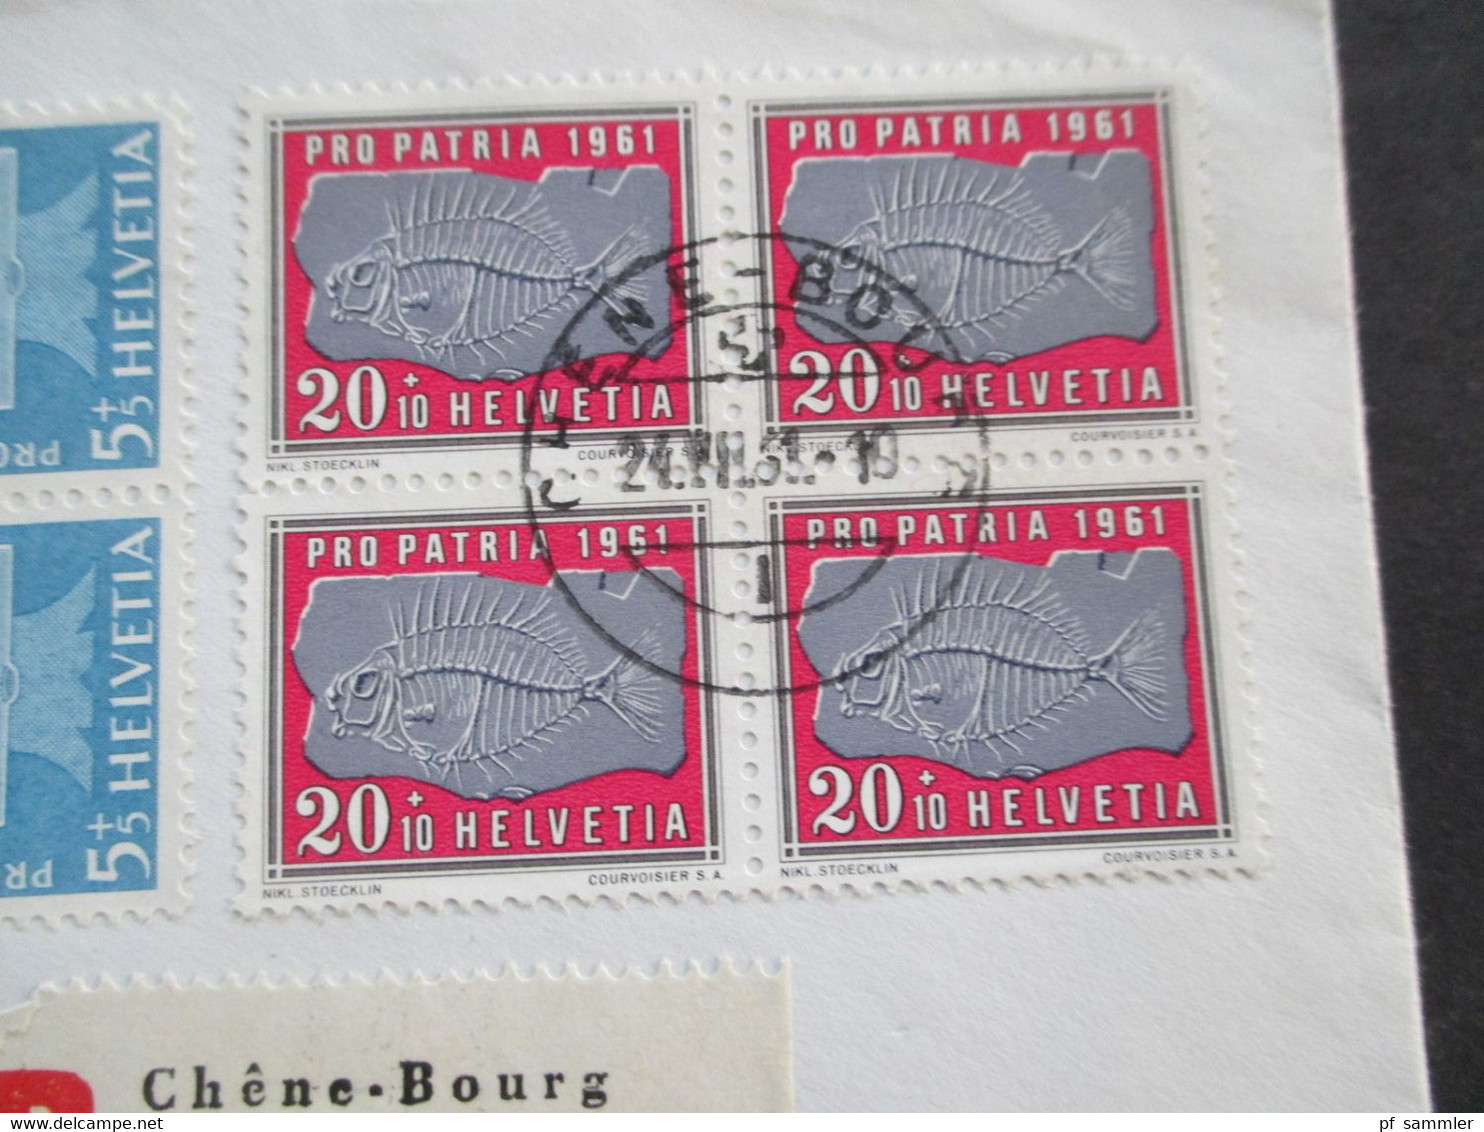 Schweiz 1961 Pro Patria Nr. 731 U. 733 Als 4er Block Einschreiben Chene-Bourg Rücks. Marke Ivalides Formez Un Seul Corps - Storia Postale